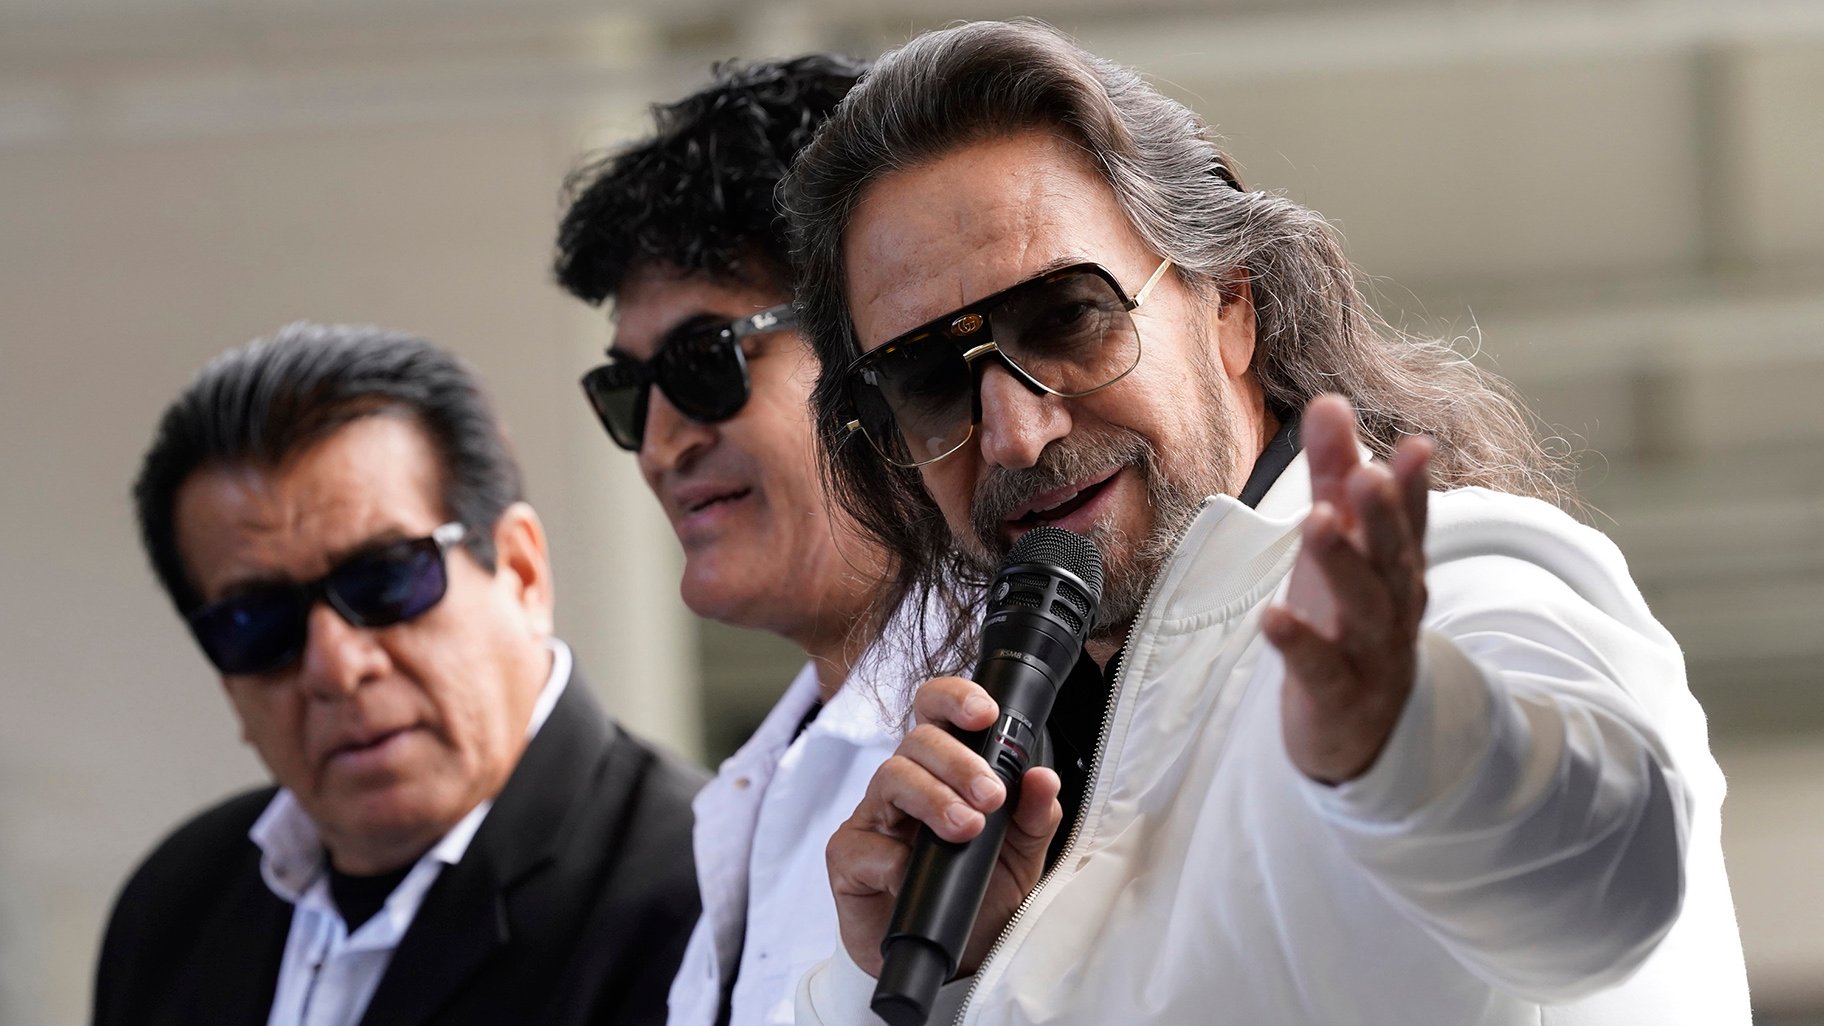 La banda mexicana Los Bukis se reunirá para su primera gira en 25 años |  Noticias de Chicago